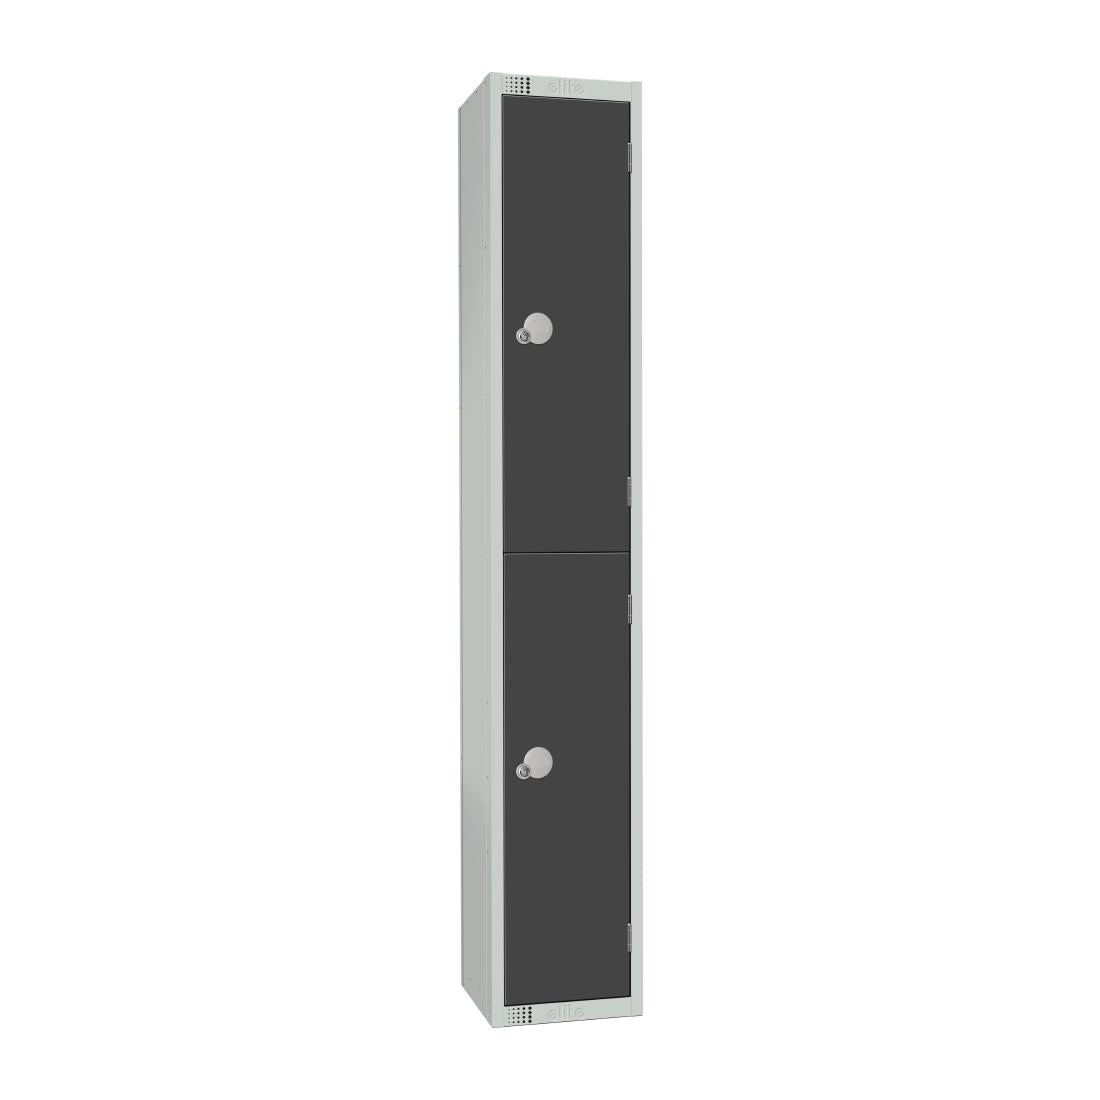 GR678-CL Elite Double Door Manual Combination Locker Locker Graphite Grey JD Catering Equipment Solutions Ltd